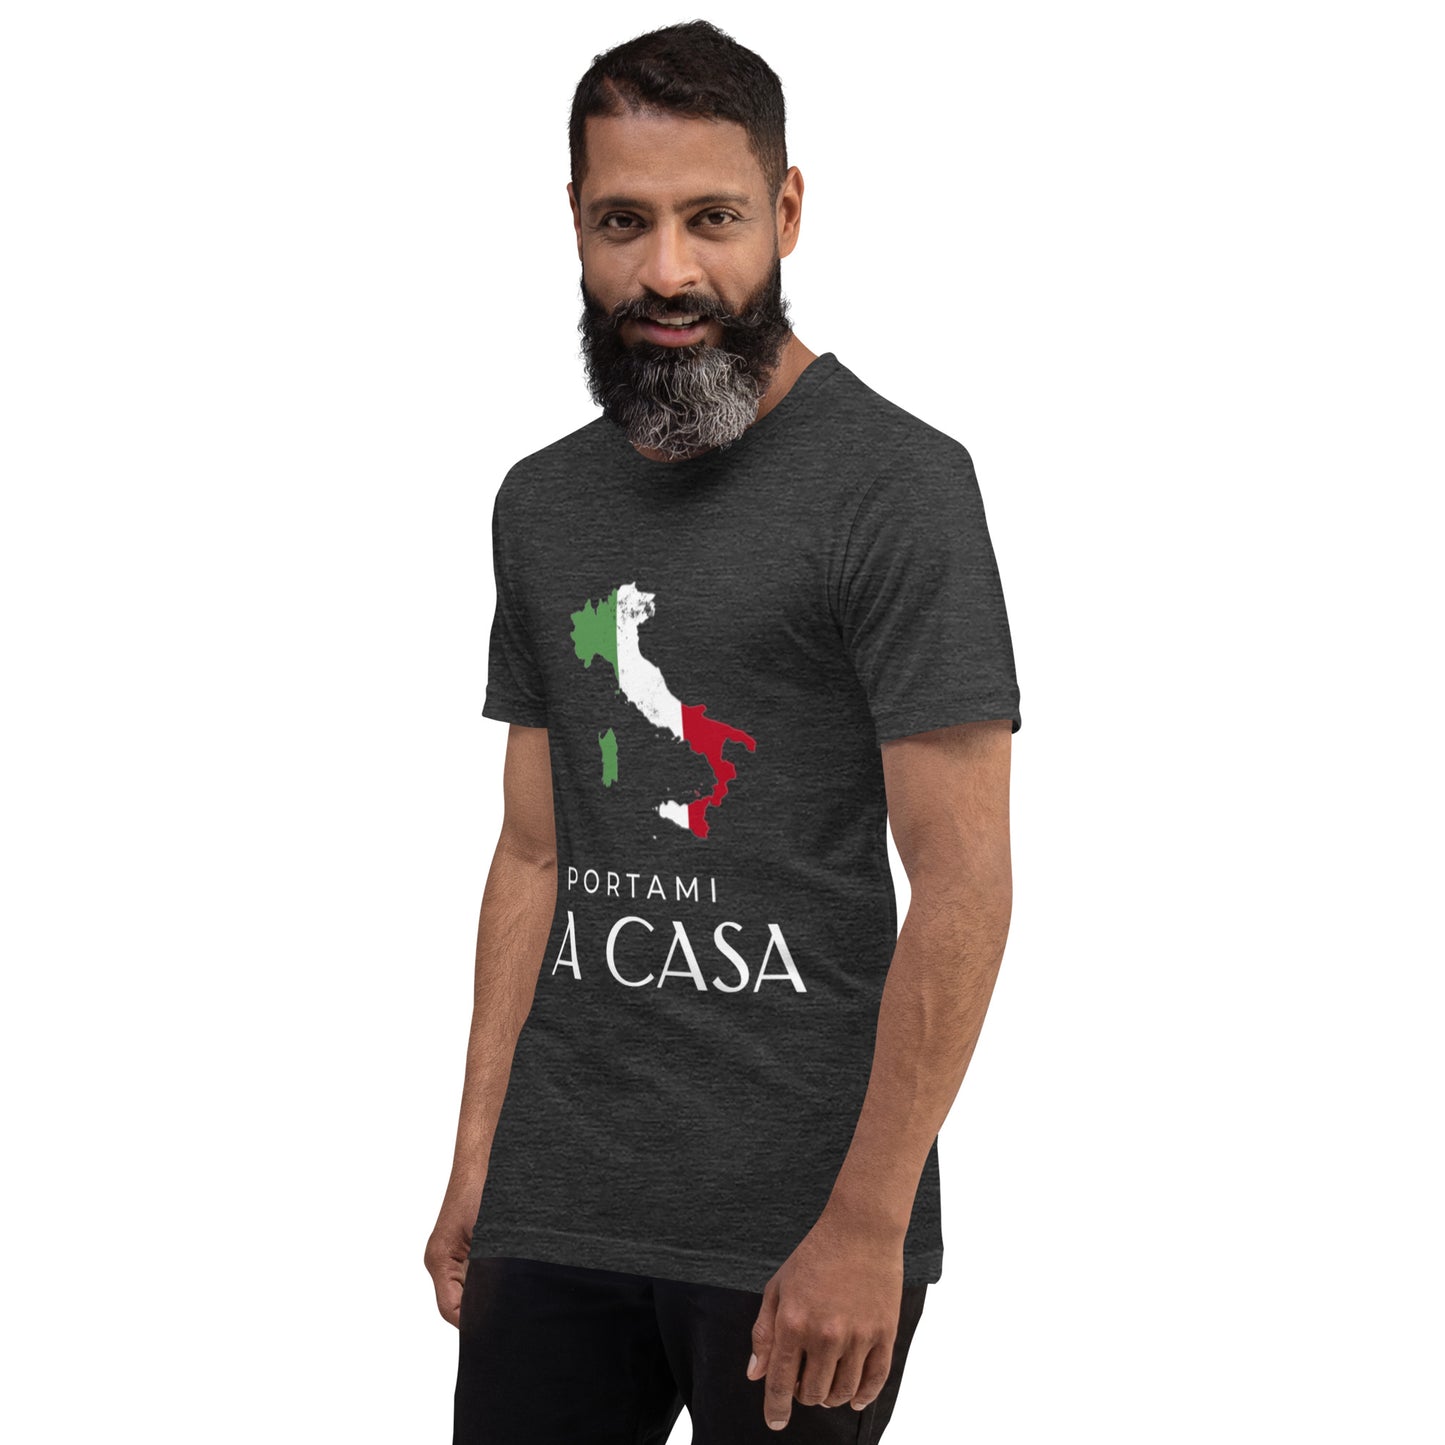 A Casa Shirt / Unisex für Männer und Frauen -schwarz, blau, pink, uvm.